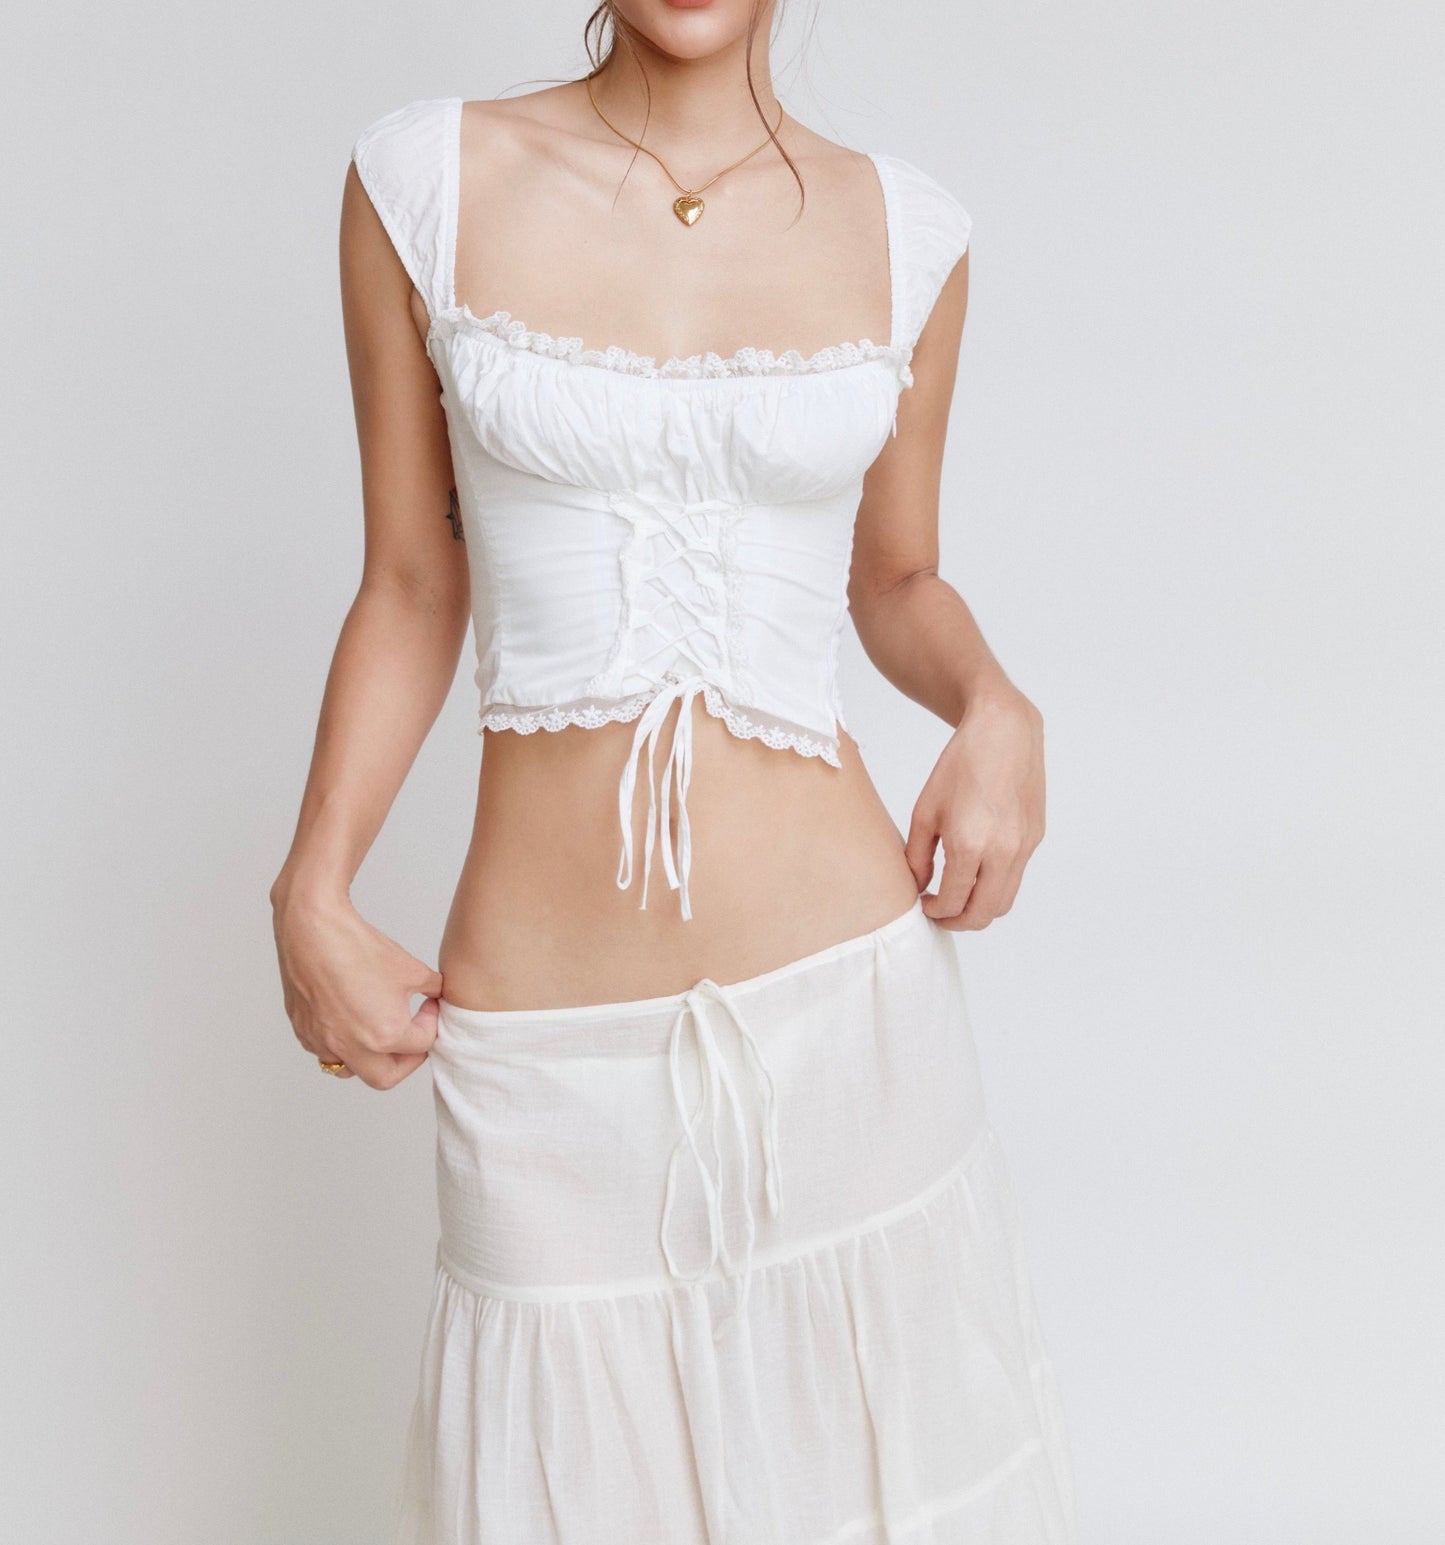 'Eleanor' 'Celeste' Cotton Top & Skirt